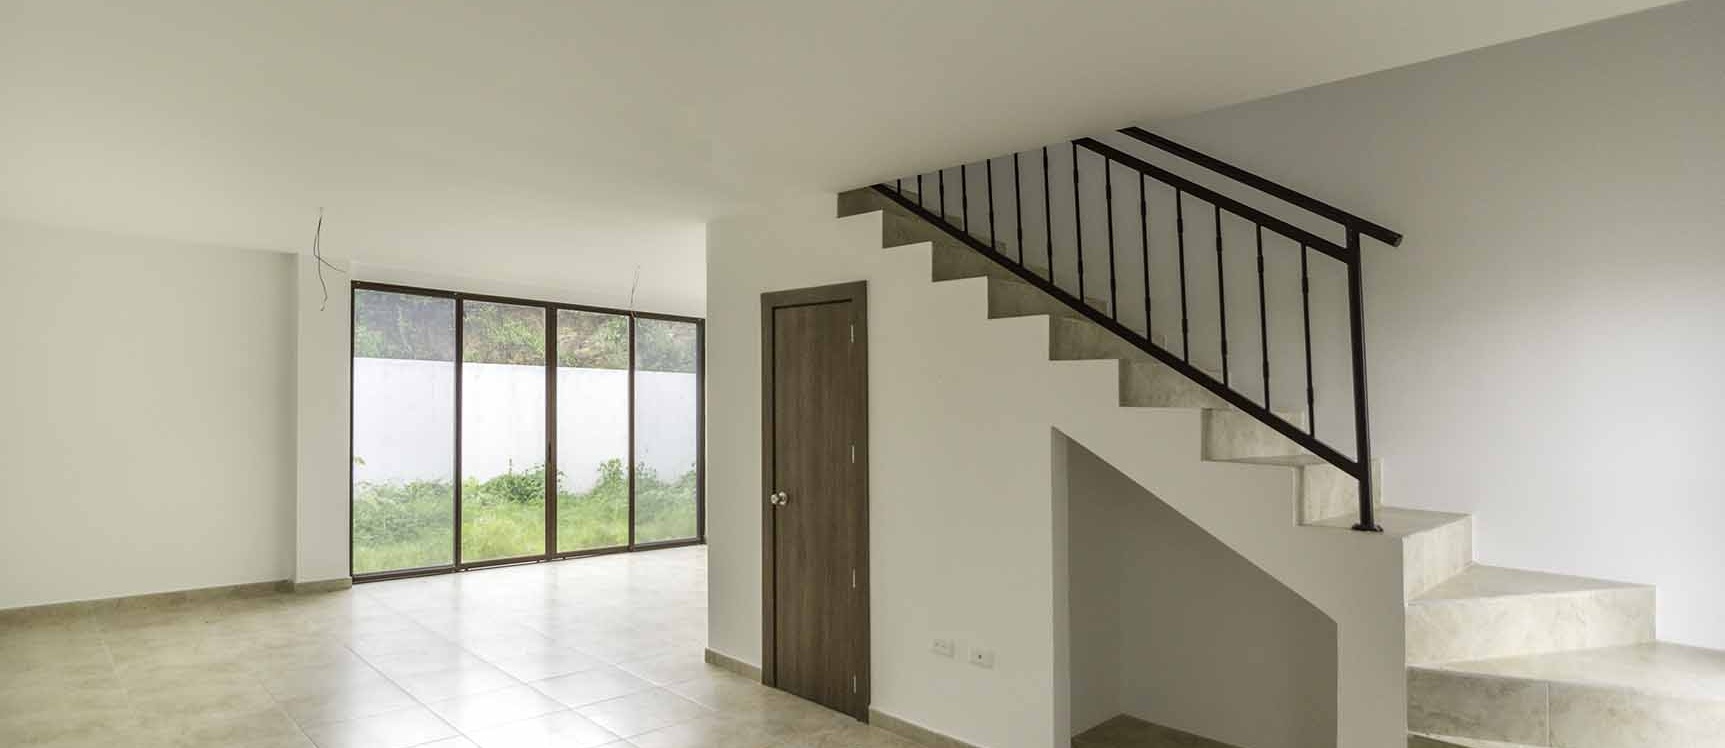 GeoBienes - Casa en Venta Urb. Villas del Bosque - Vía a La Costa - Plusvalia Guayaquil Casas de venta y alquiler Inmobiliaria Ecuador